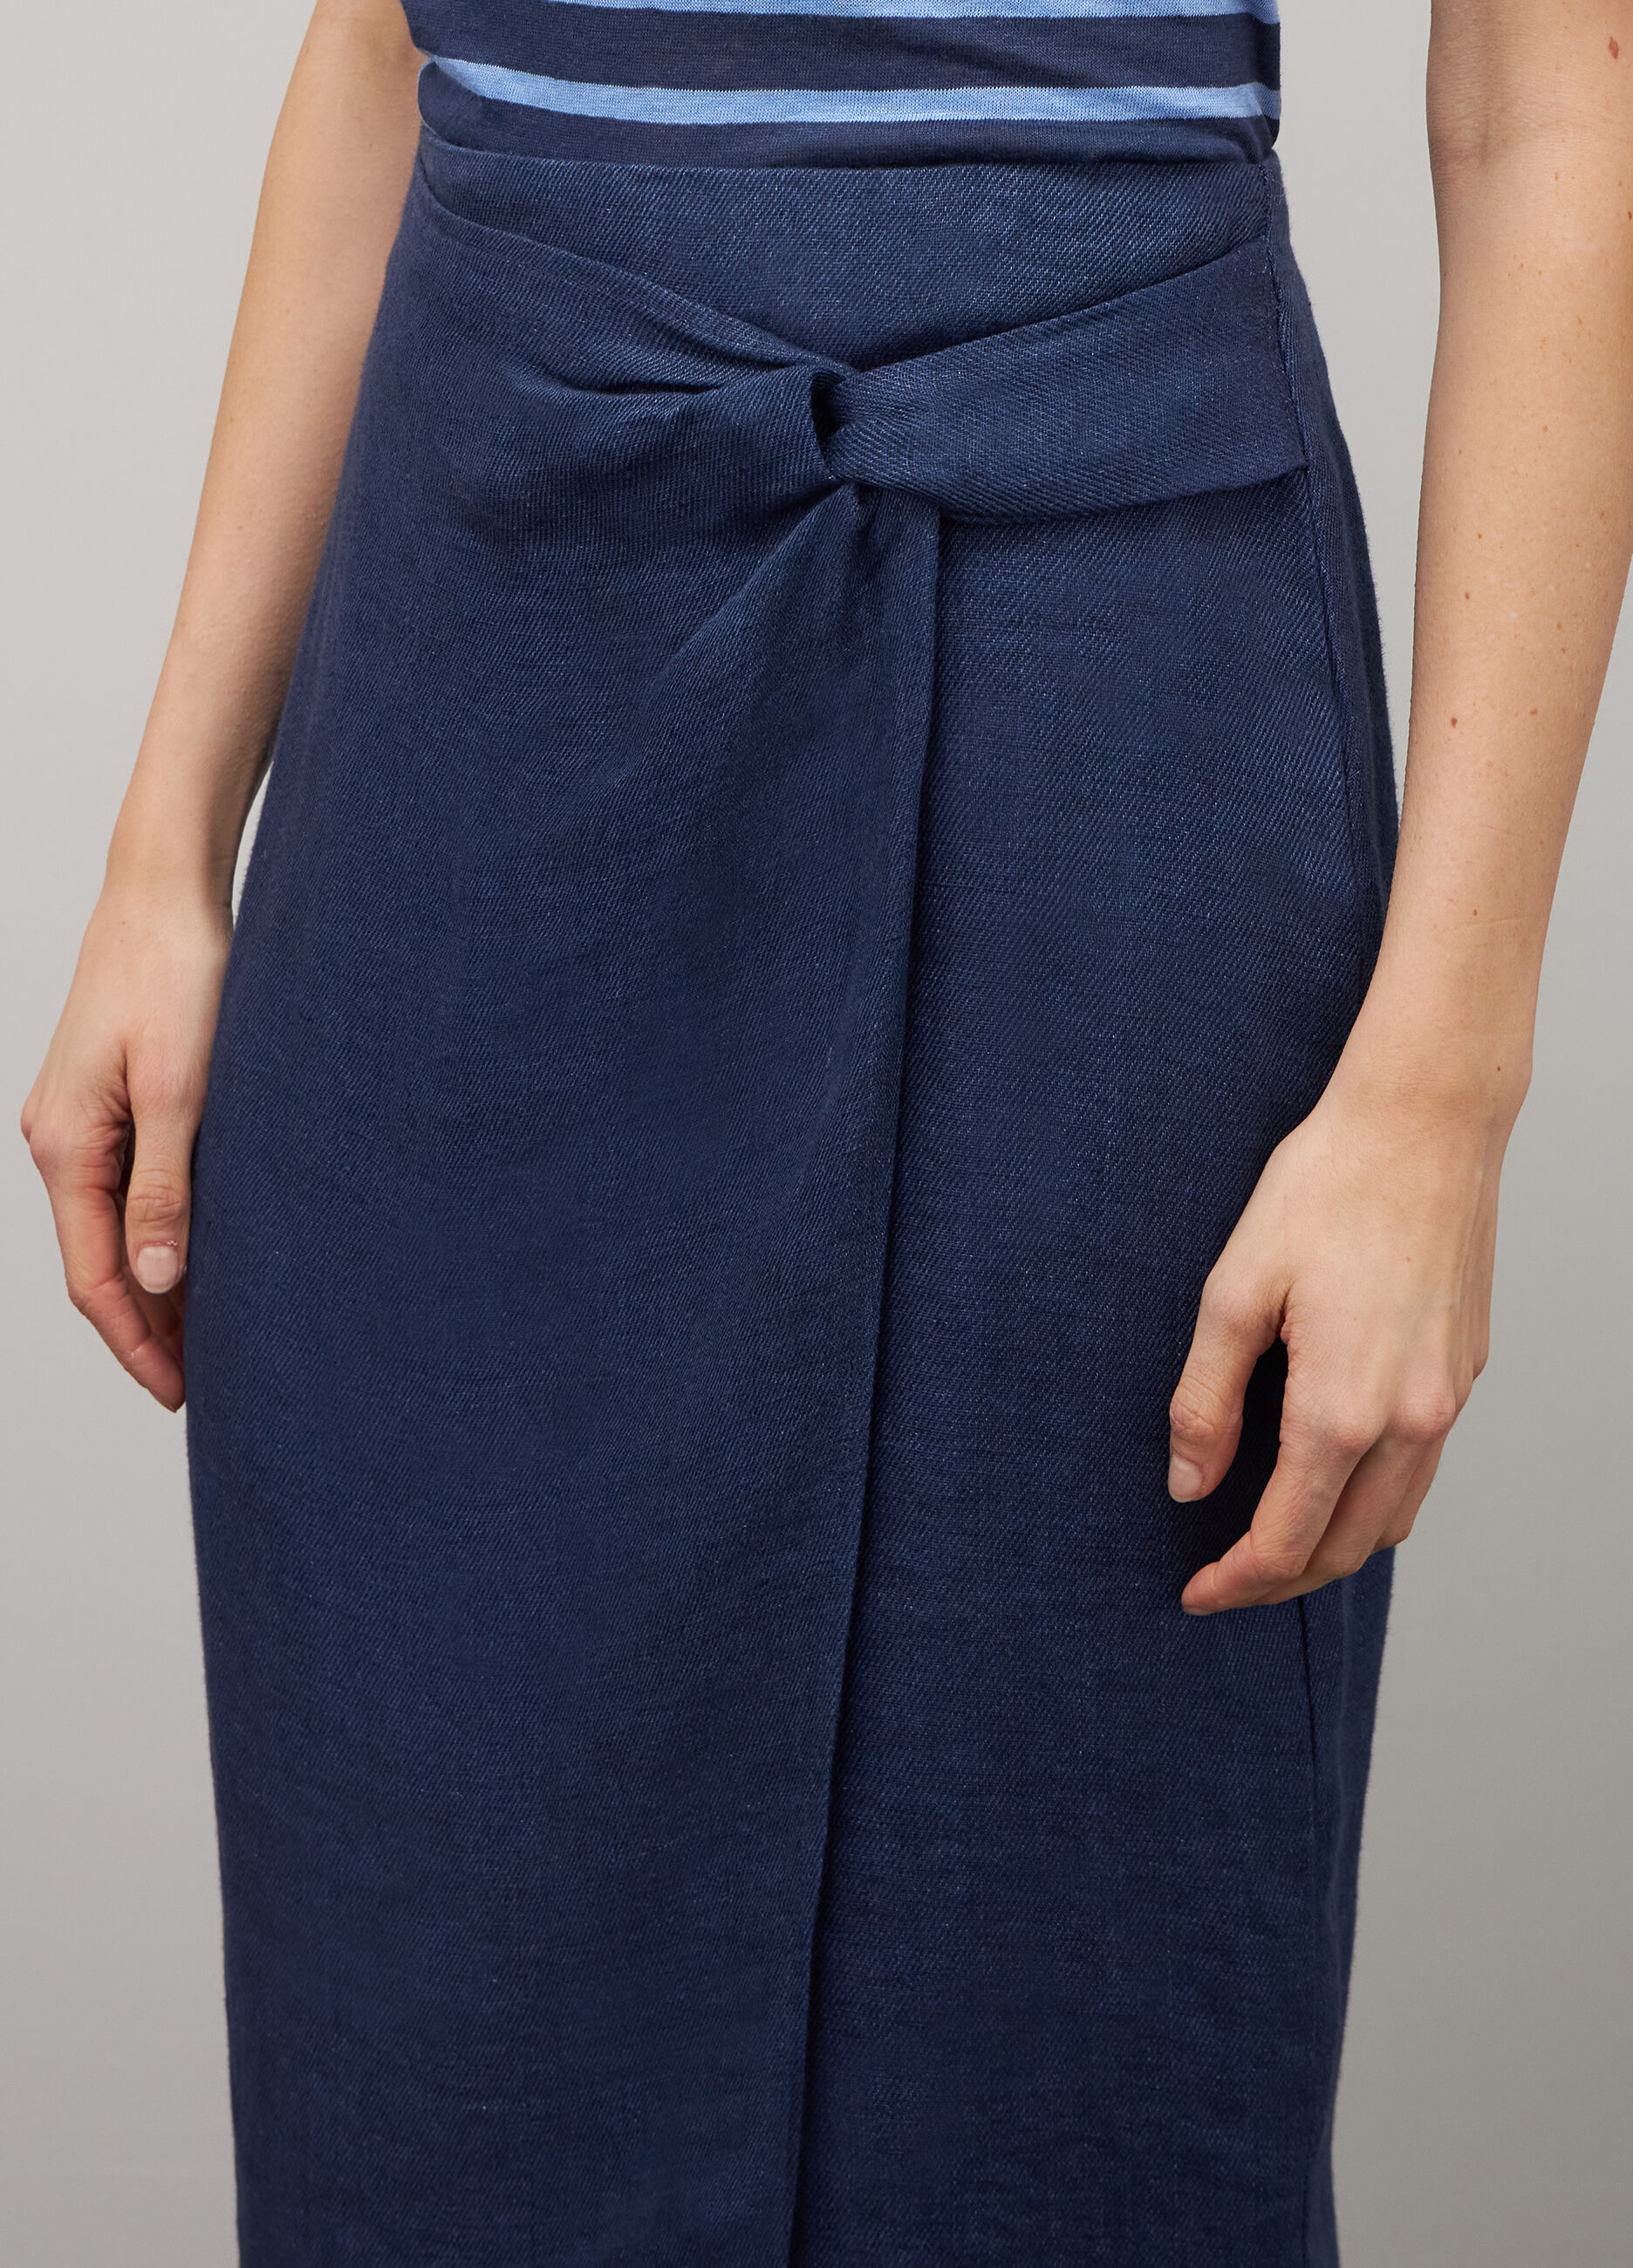 Linen wrap skirt